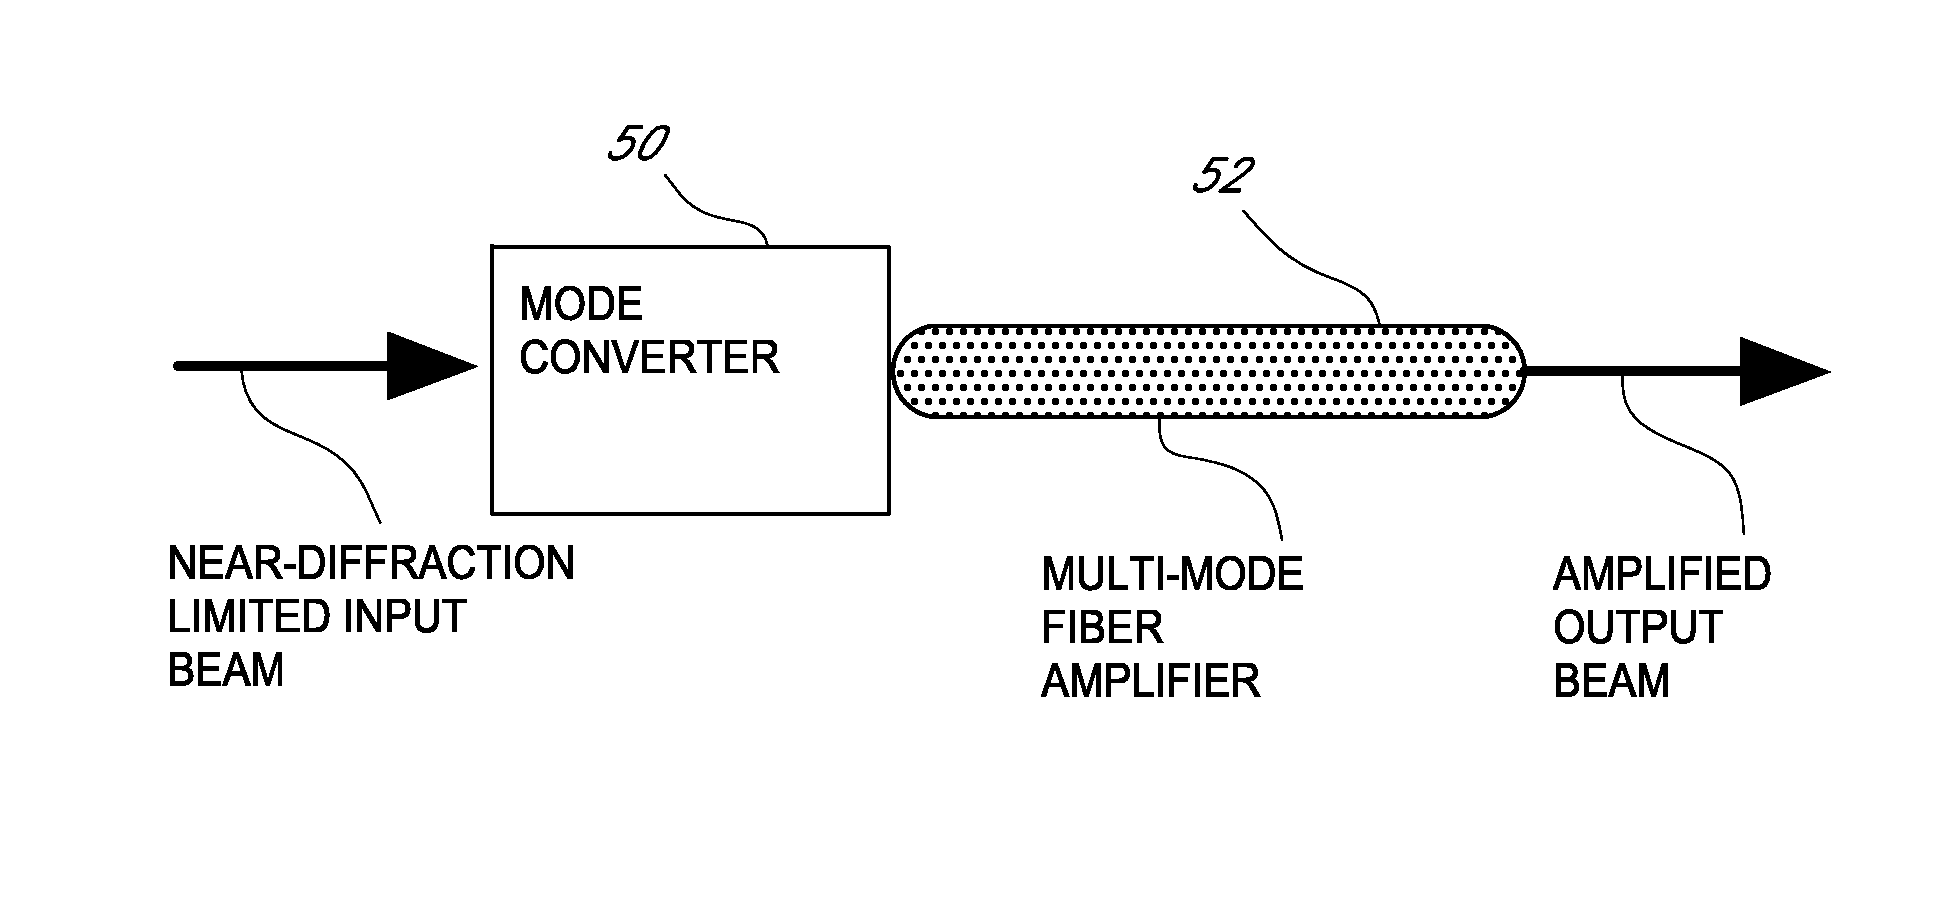 Multi-mode fiber amplifier